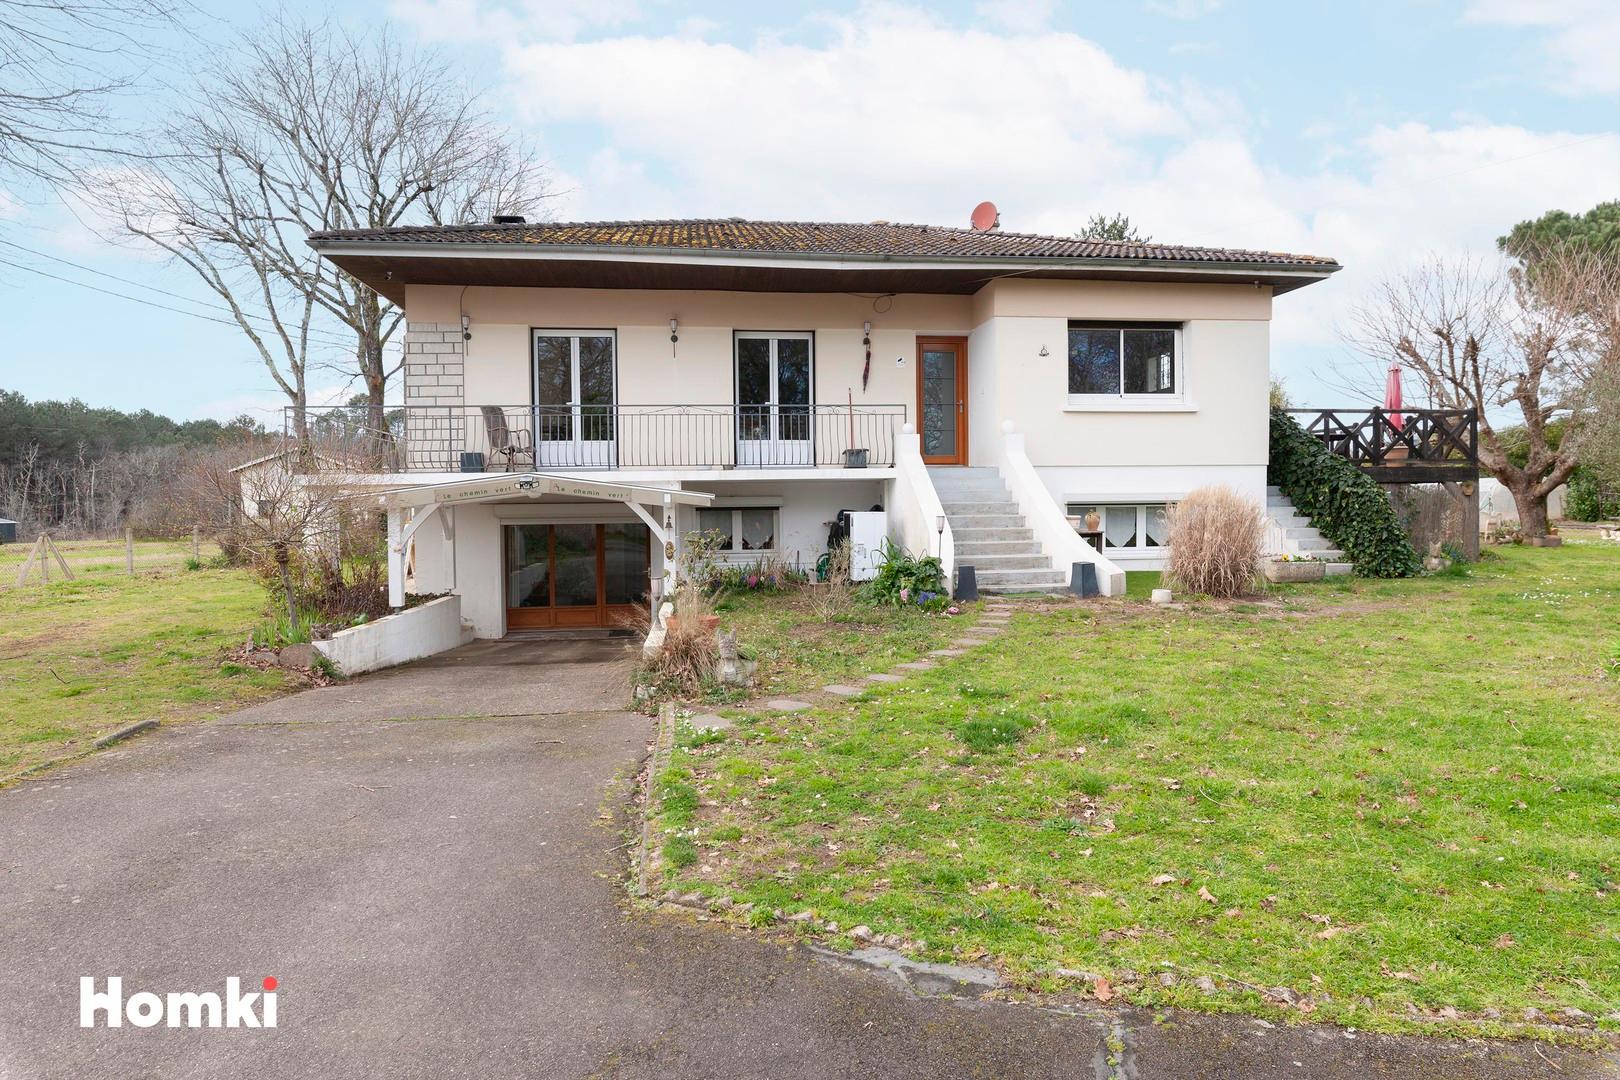 Homki - Vente Maison/villa  de 200.0 m² à Gaillères 40090